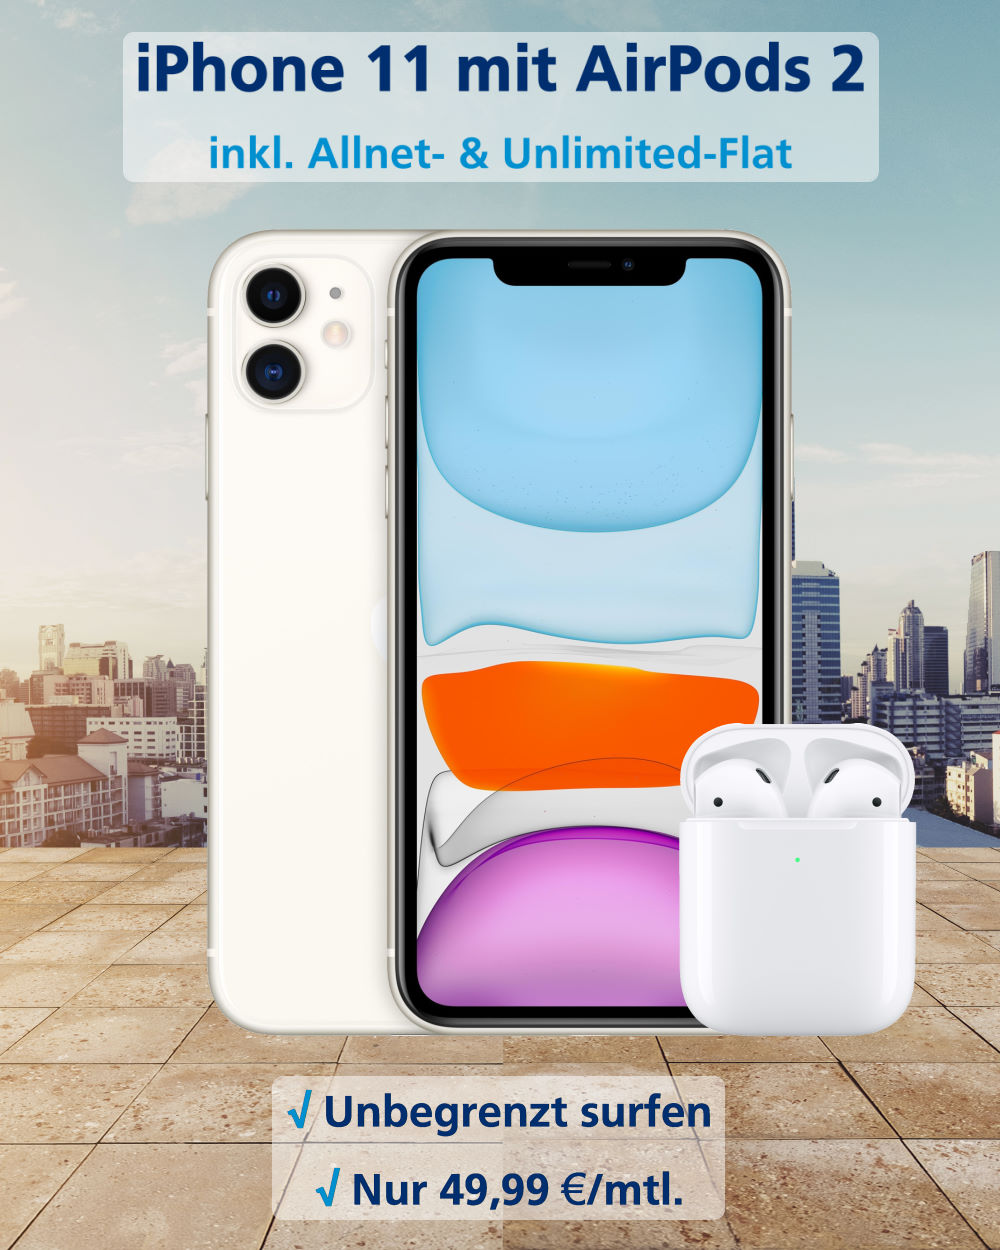 iPhone 11 inkl. Airpods 2 und Unlimited-Flat zum Bestpreis